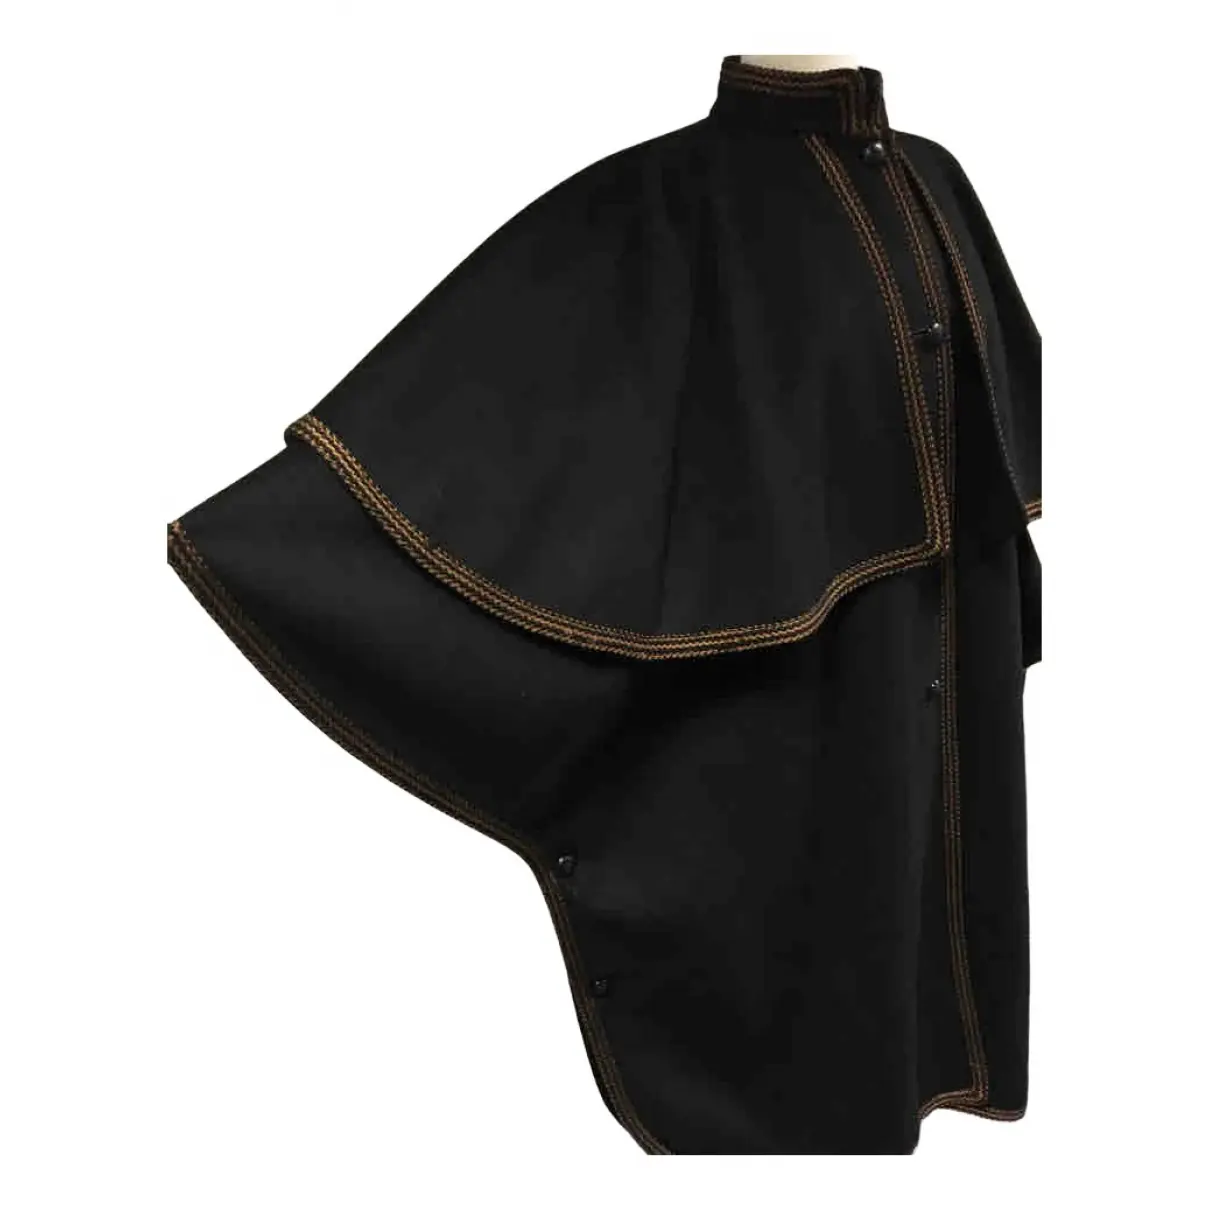 Buy Yves Saint Laurent Wool coat online - Vintage